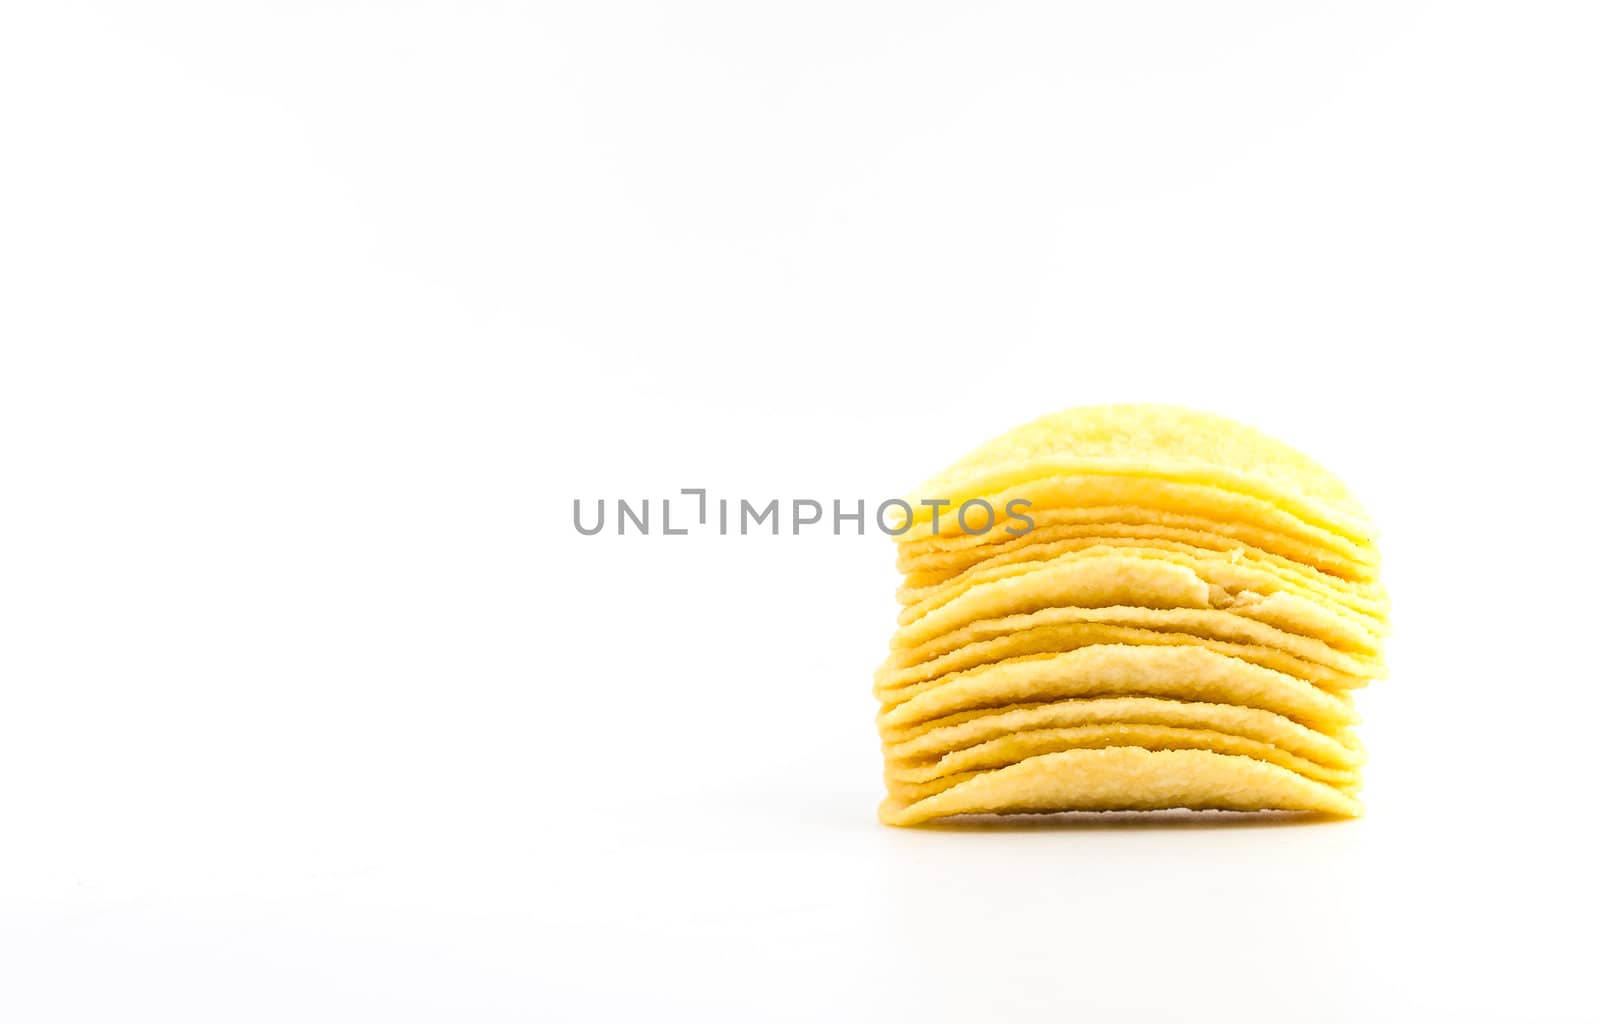 Potato chips crisps on white background by moggara12